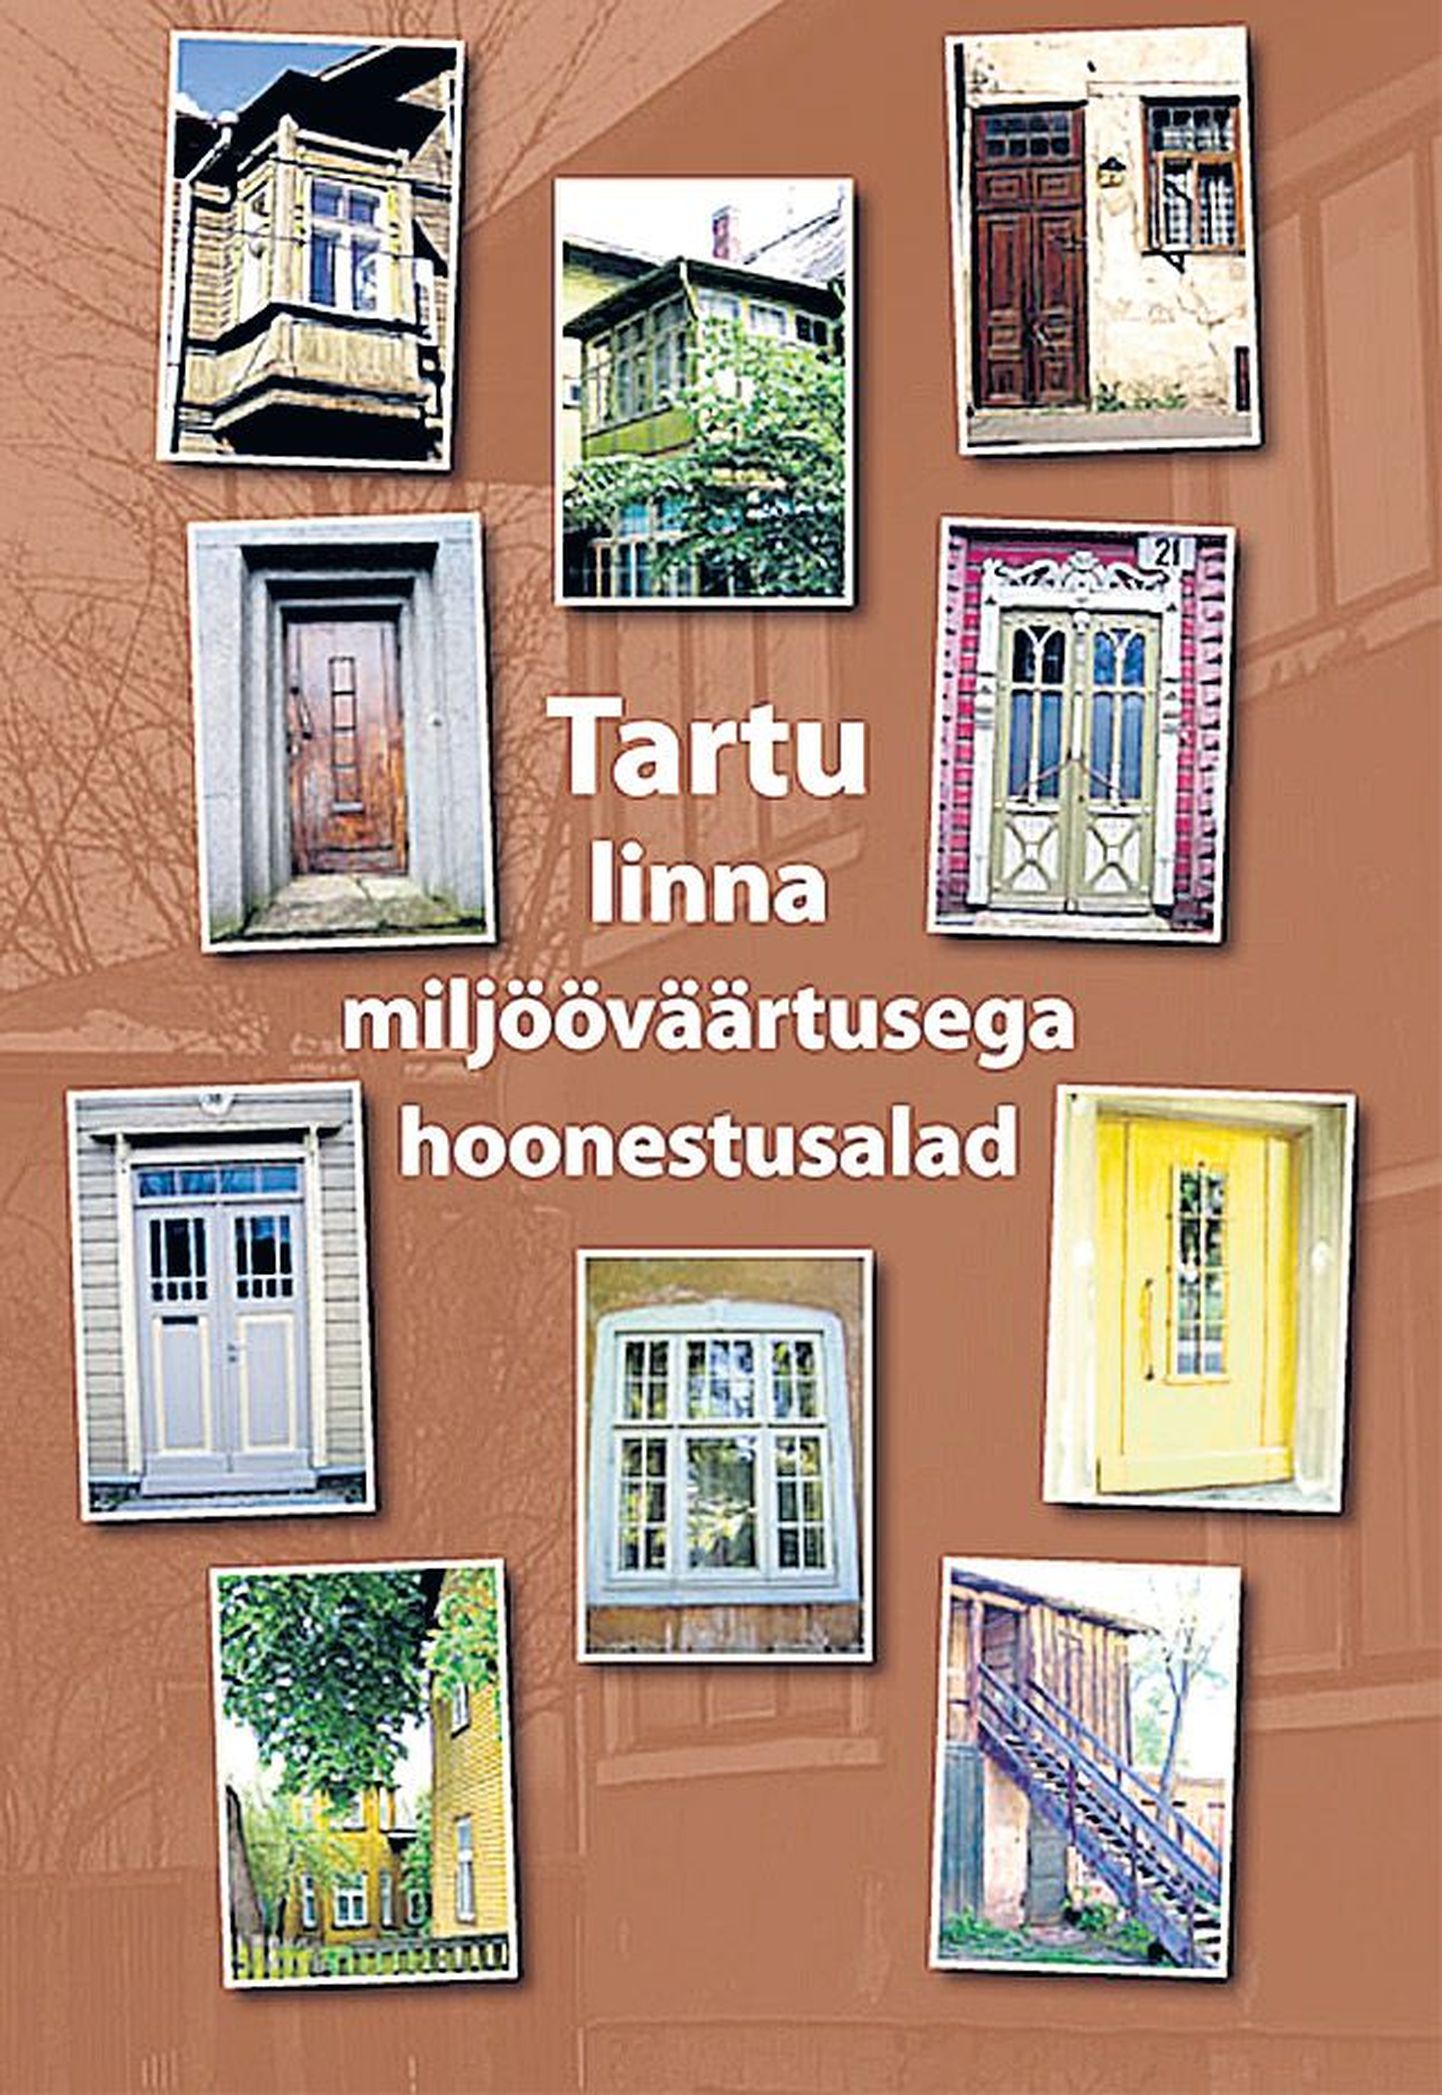 «Tartu linna miljööväärtusega hoonestusalad»
Tartu linnavalitsus